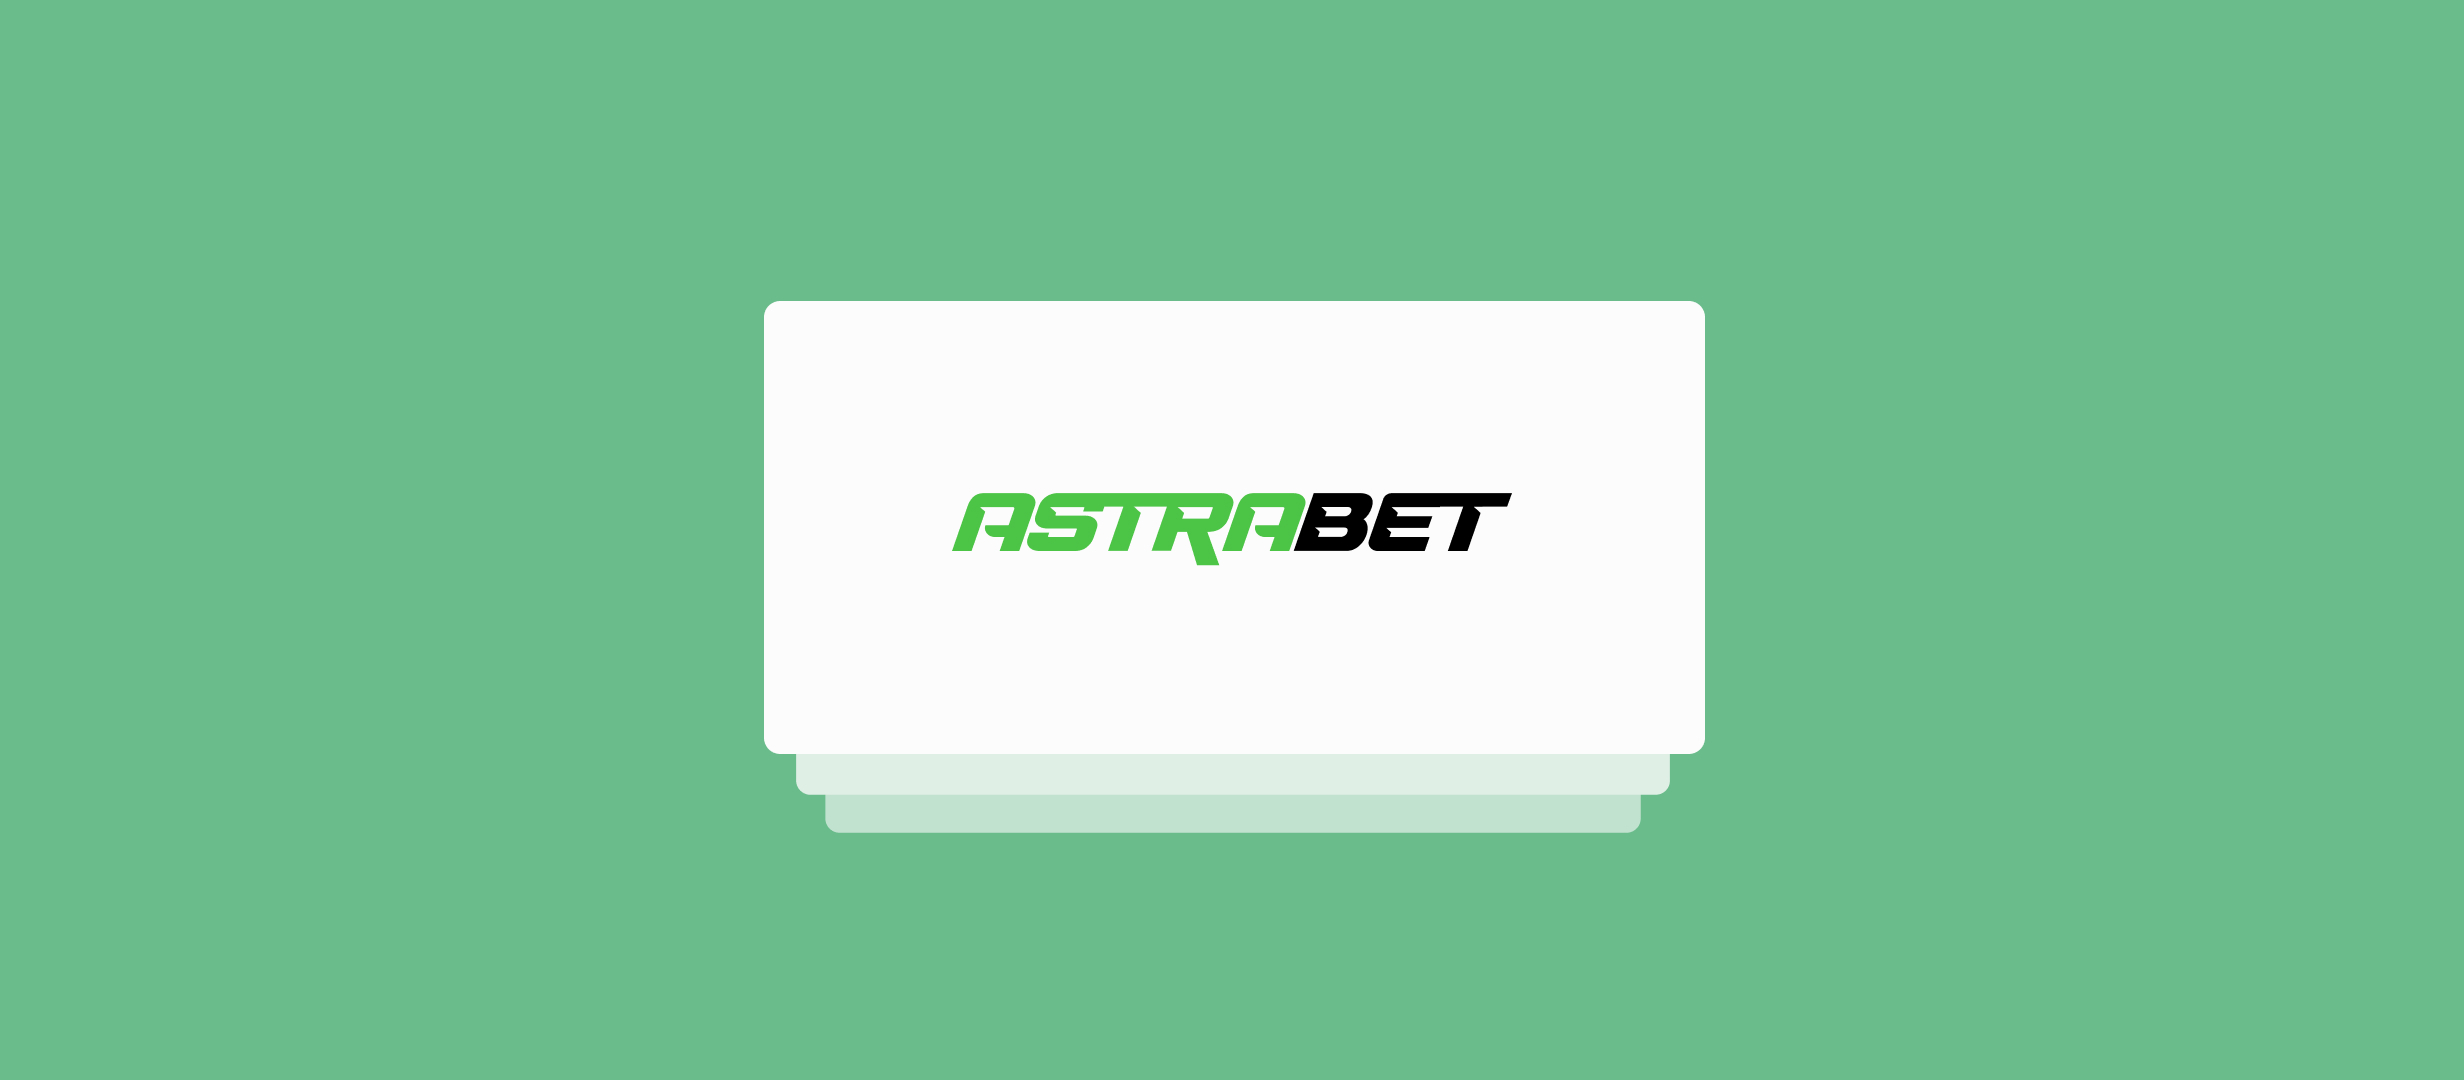 Не работают сайт и приложения букмекерской конторы Astrabet